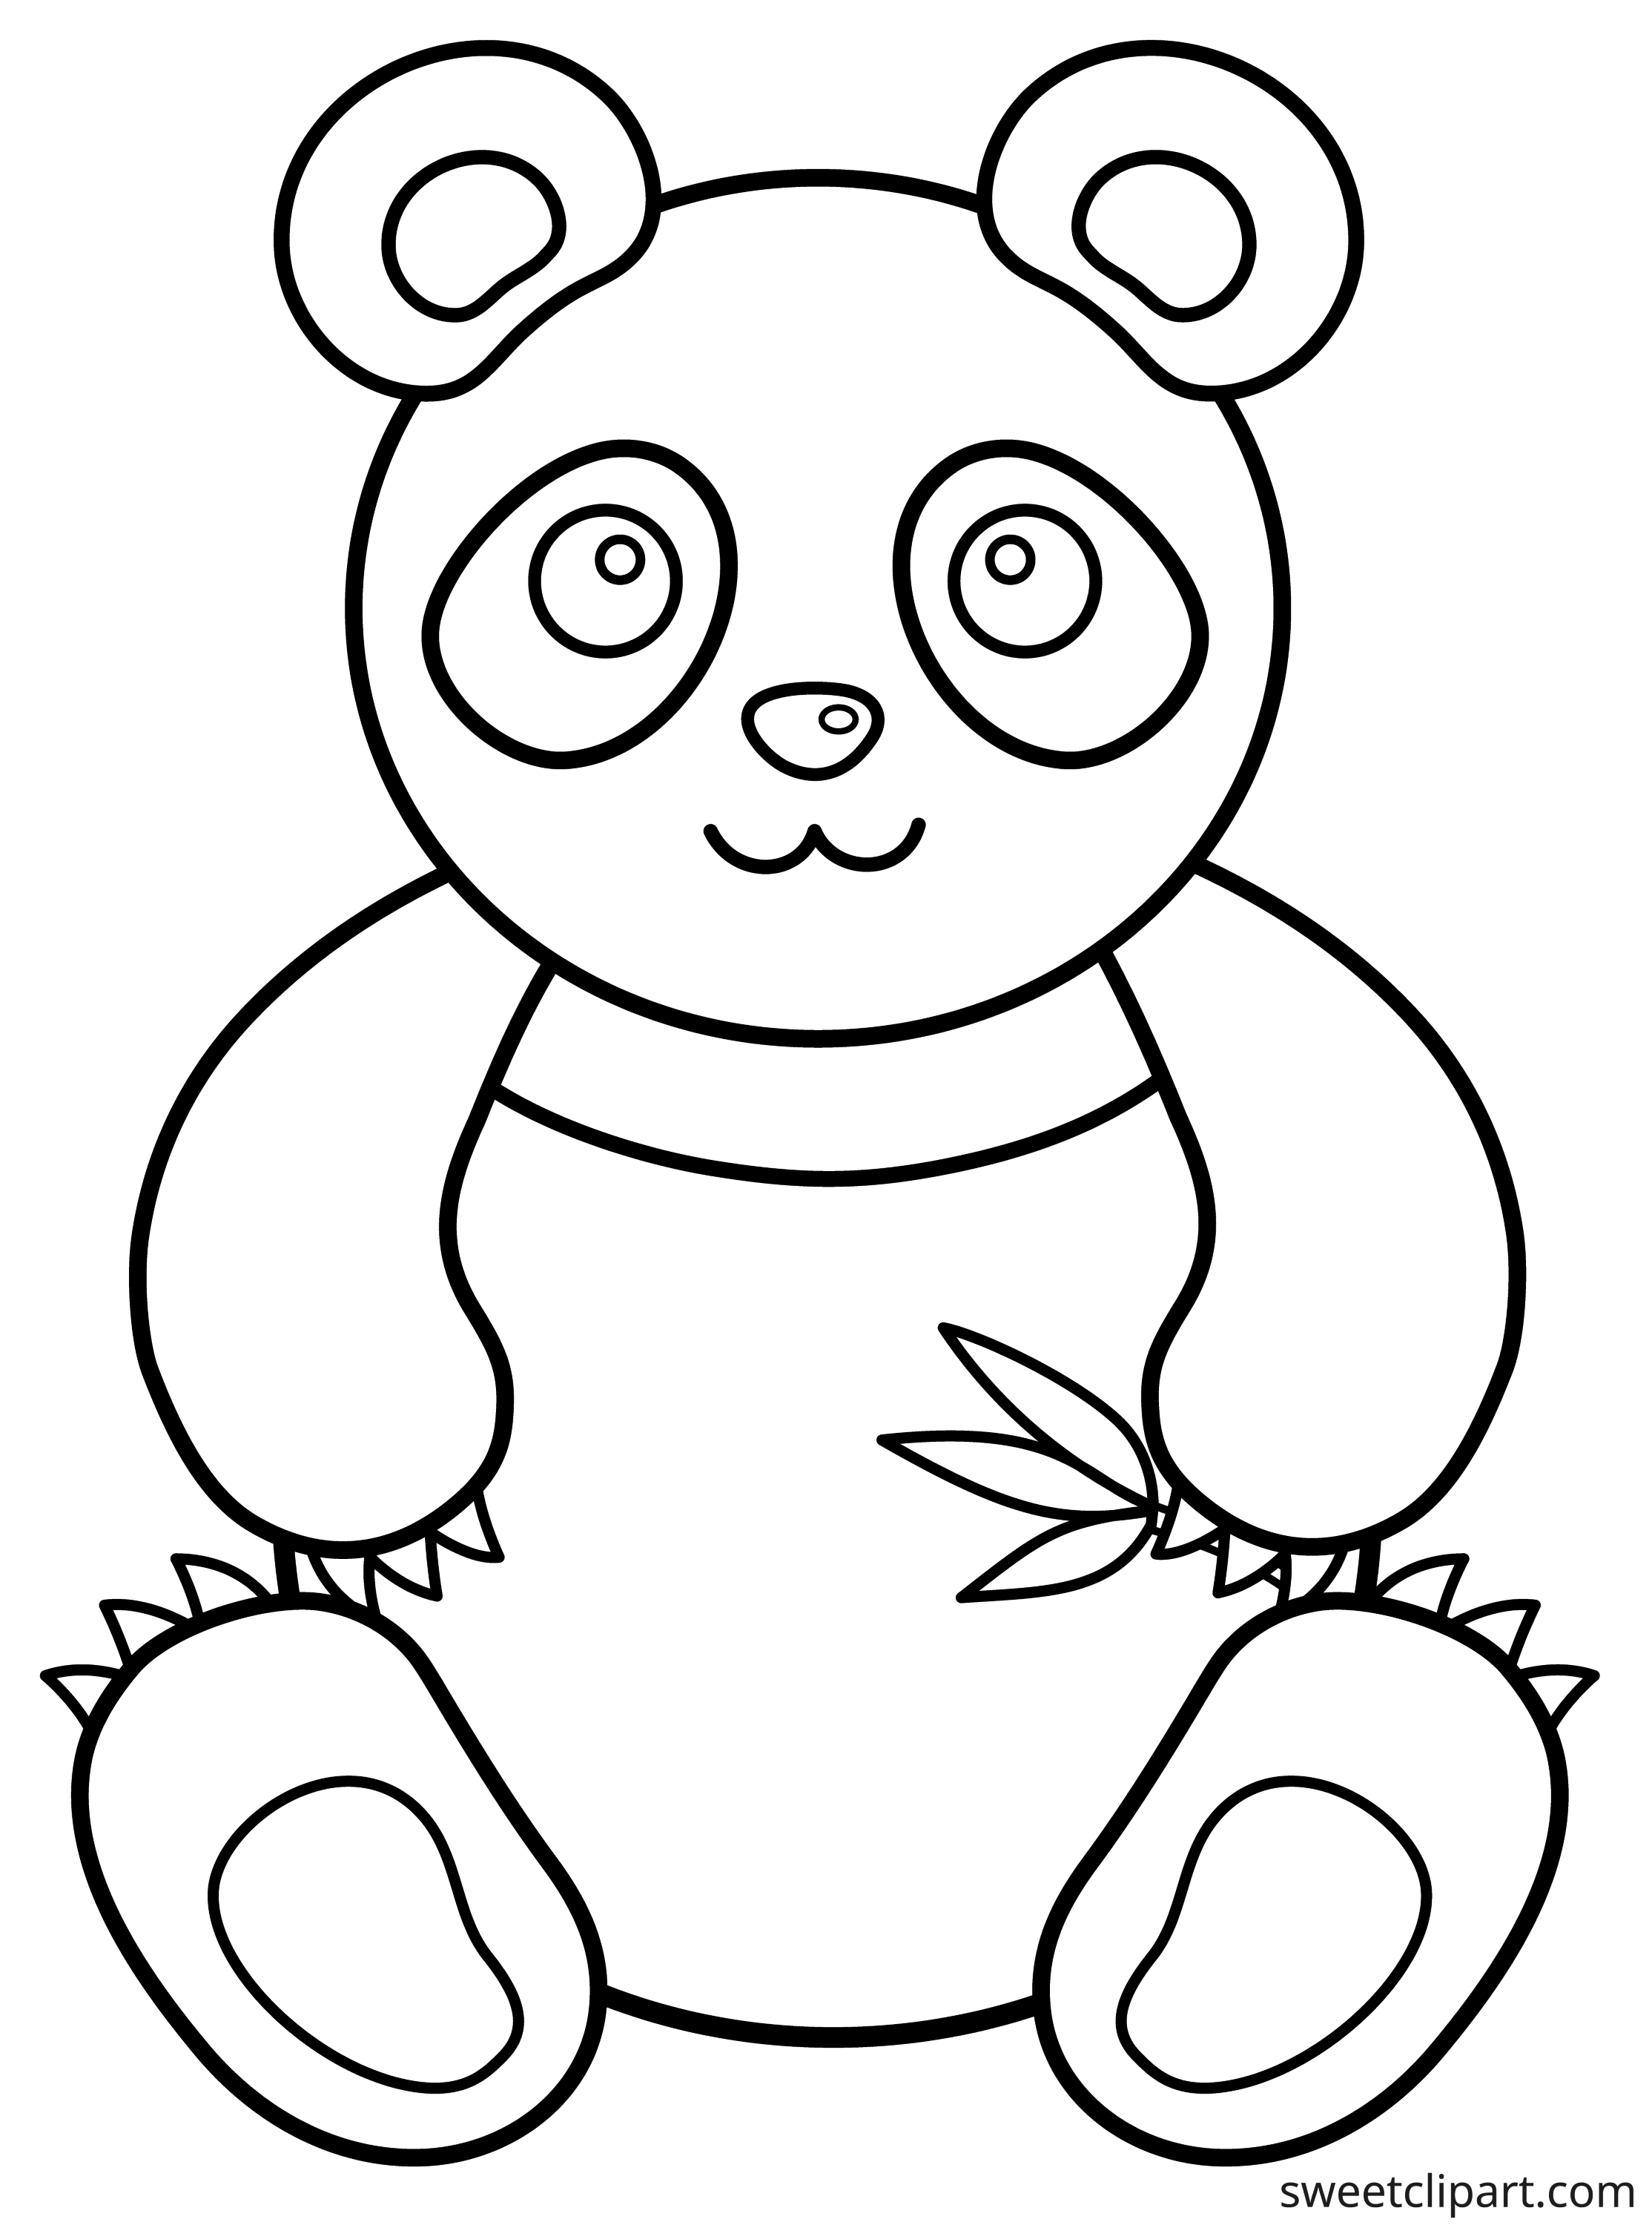 printable-panda-bear-printable-word-searches